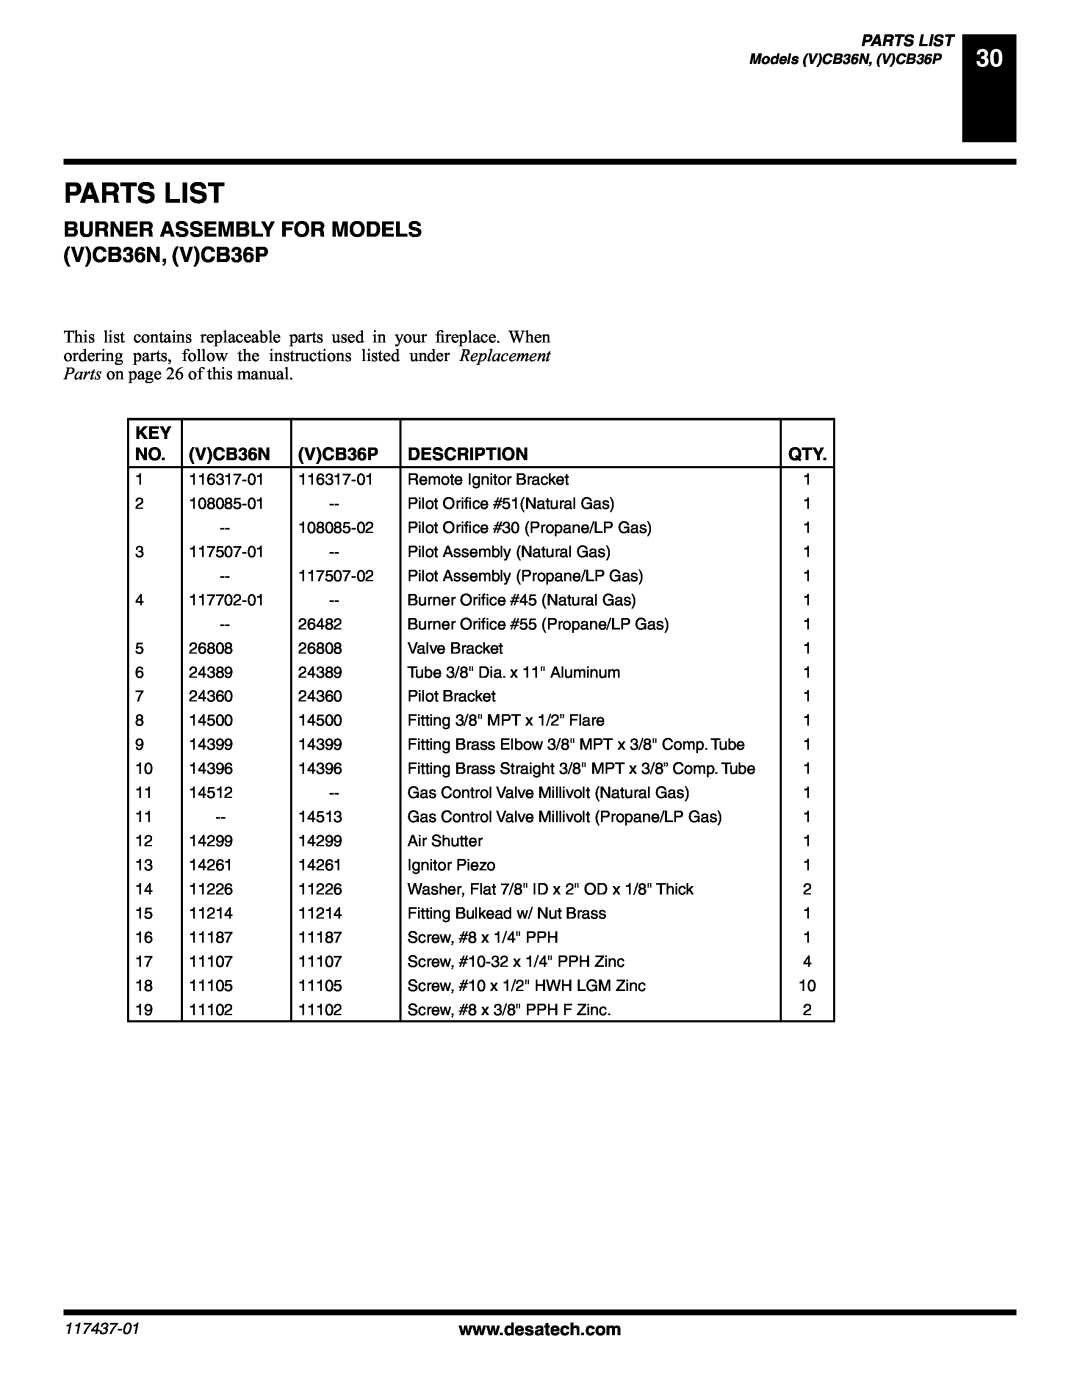 Desa (V) CB36(N installation manual Parts List, BURNER ASSEMBLY FOR MODELS VCB36N, VCB36P, Description 